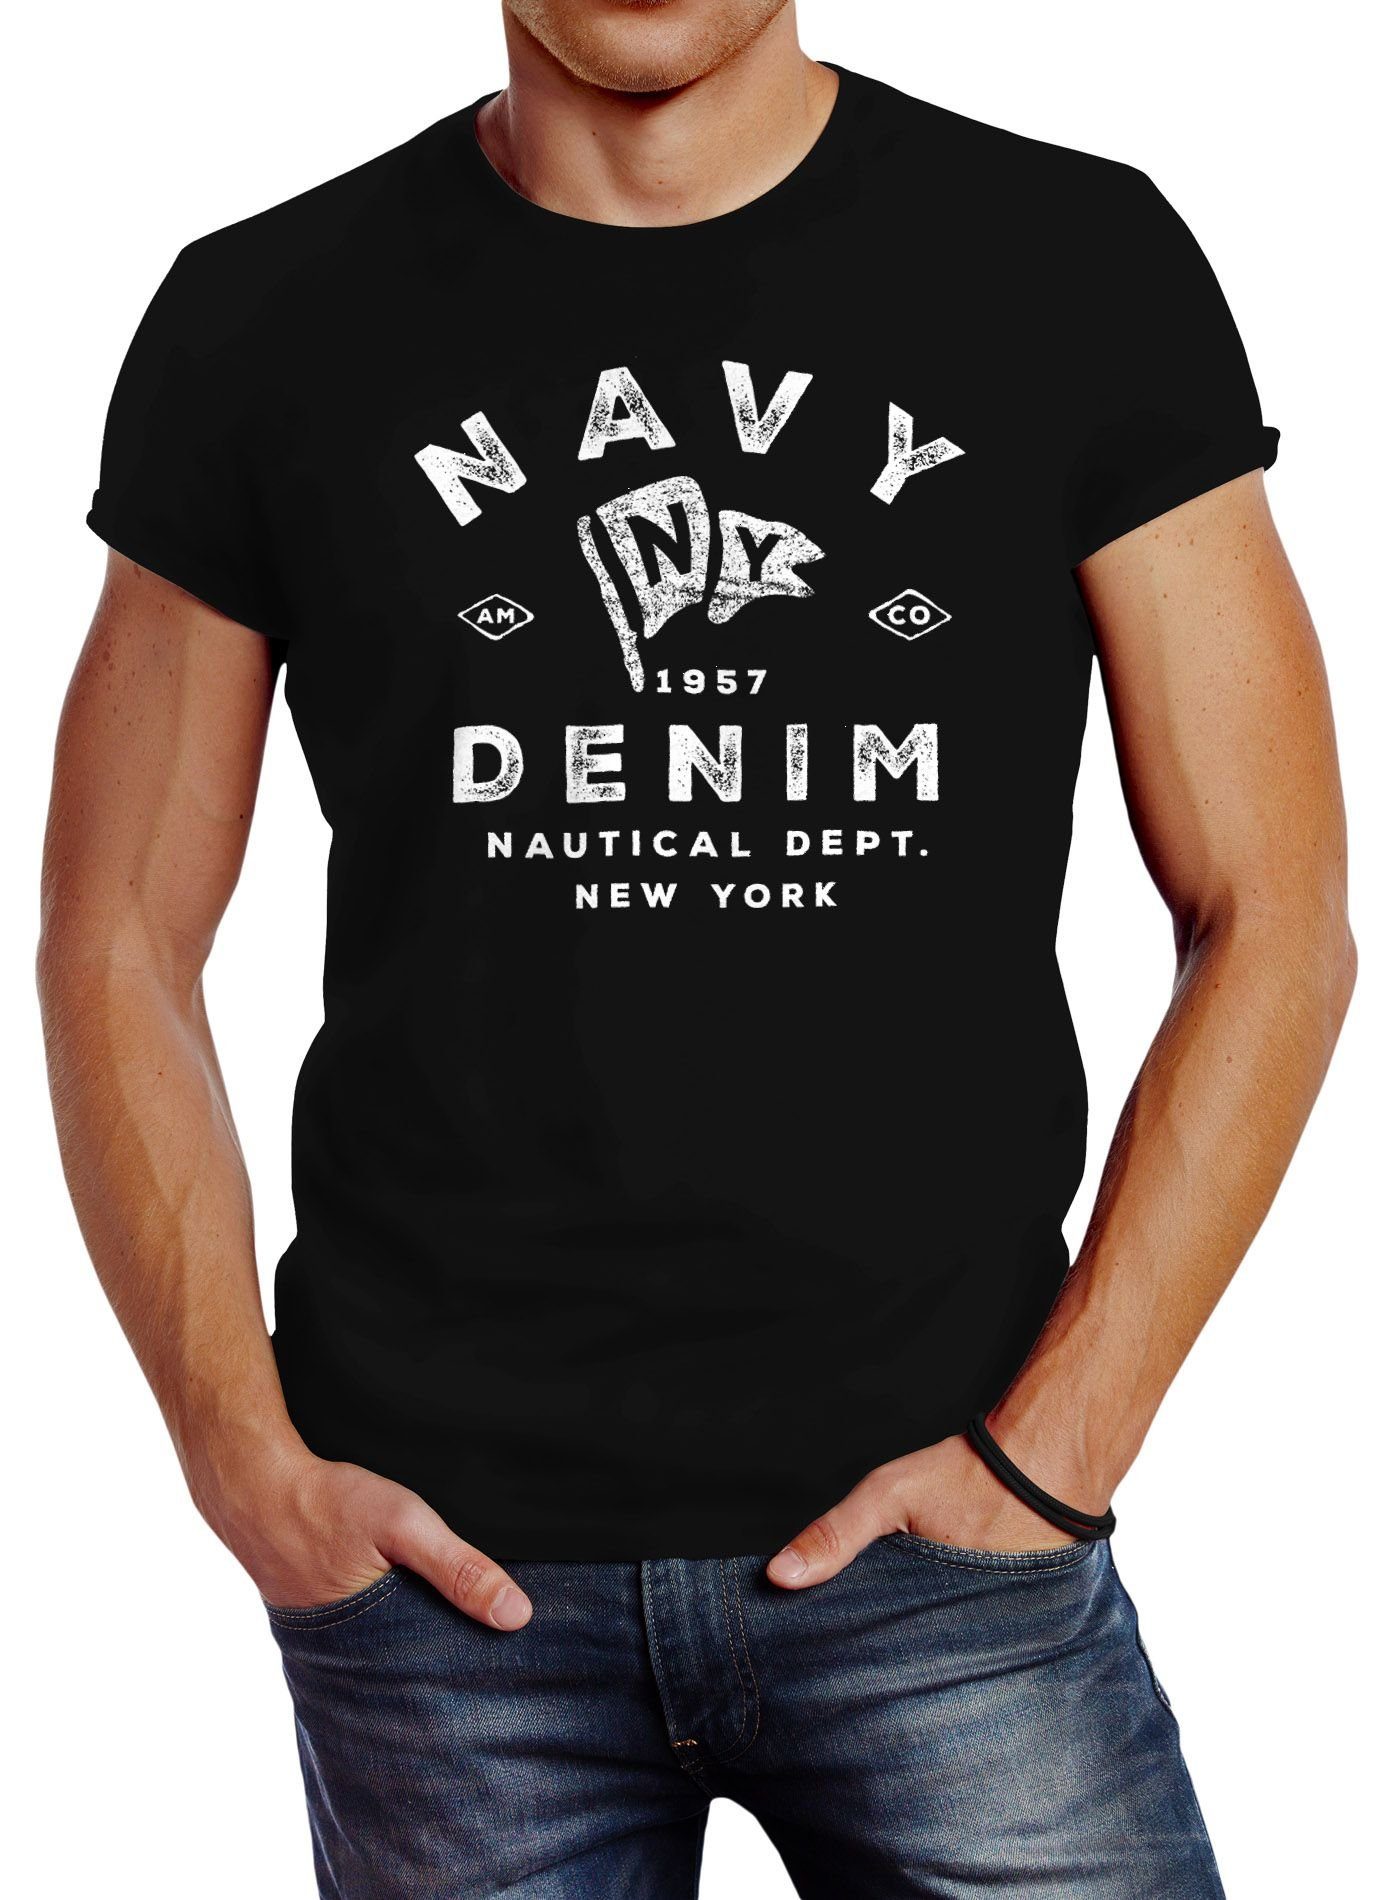 Neverless Print-Shirt Herren T-Shirt Vintage Motiv Schriftzug Navy Denim Nautical New York Neverless® mit Print schwarz